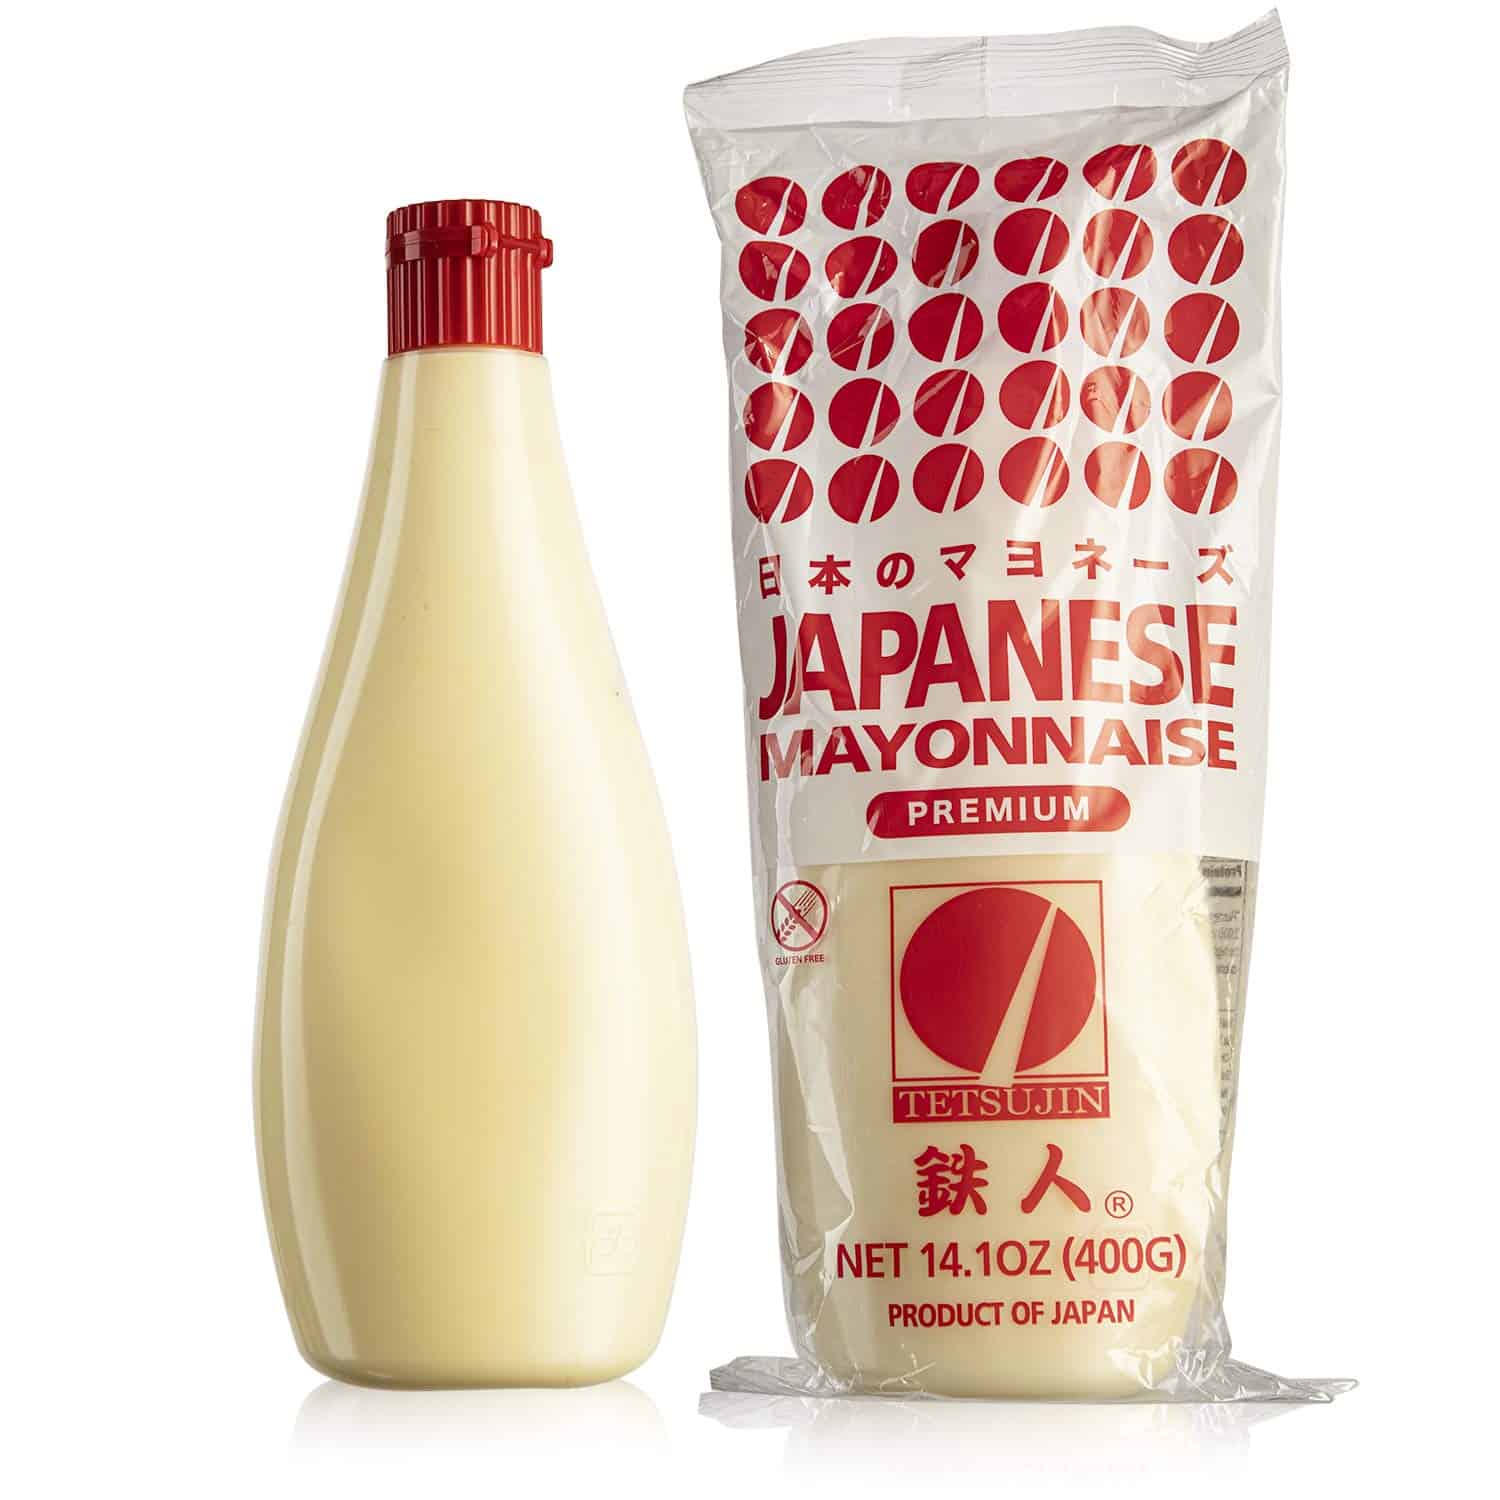 mayonnaise Japaneaidd kewpie